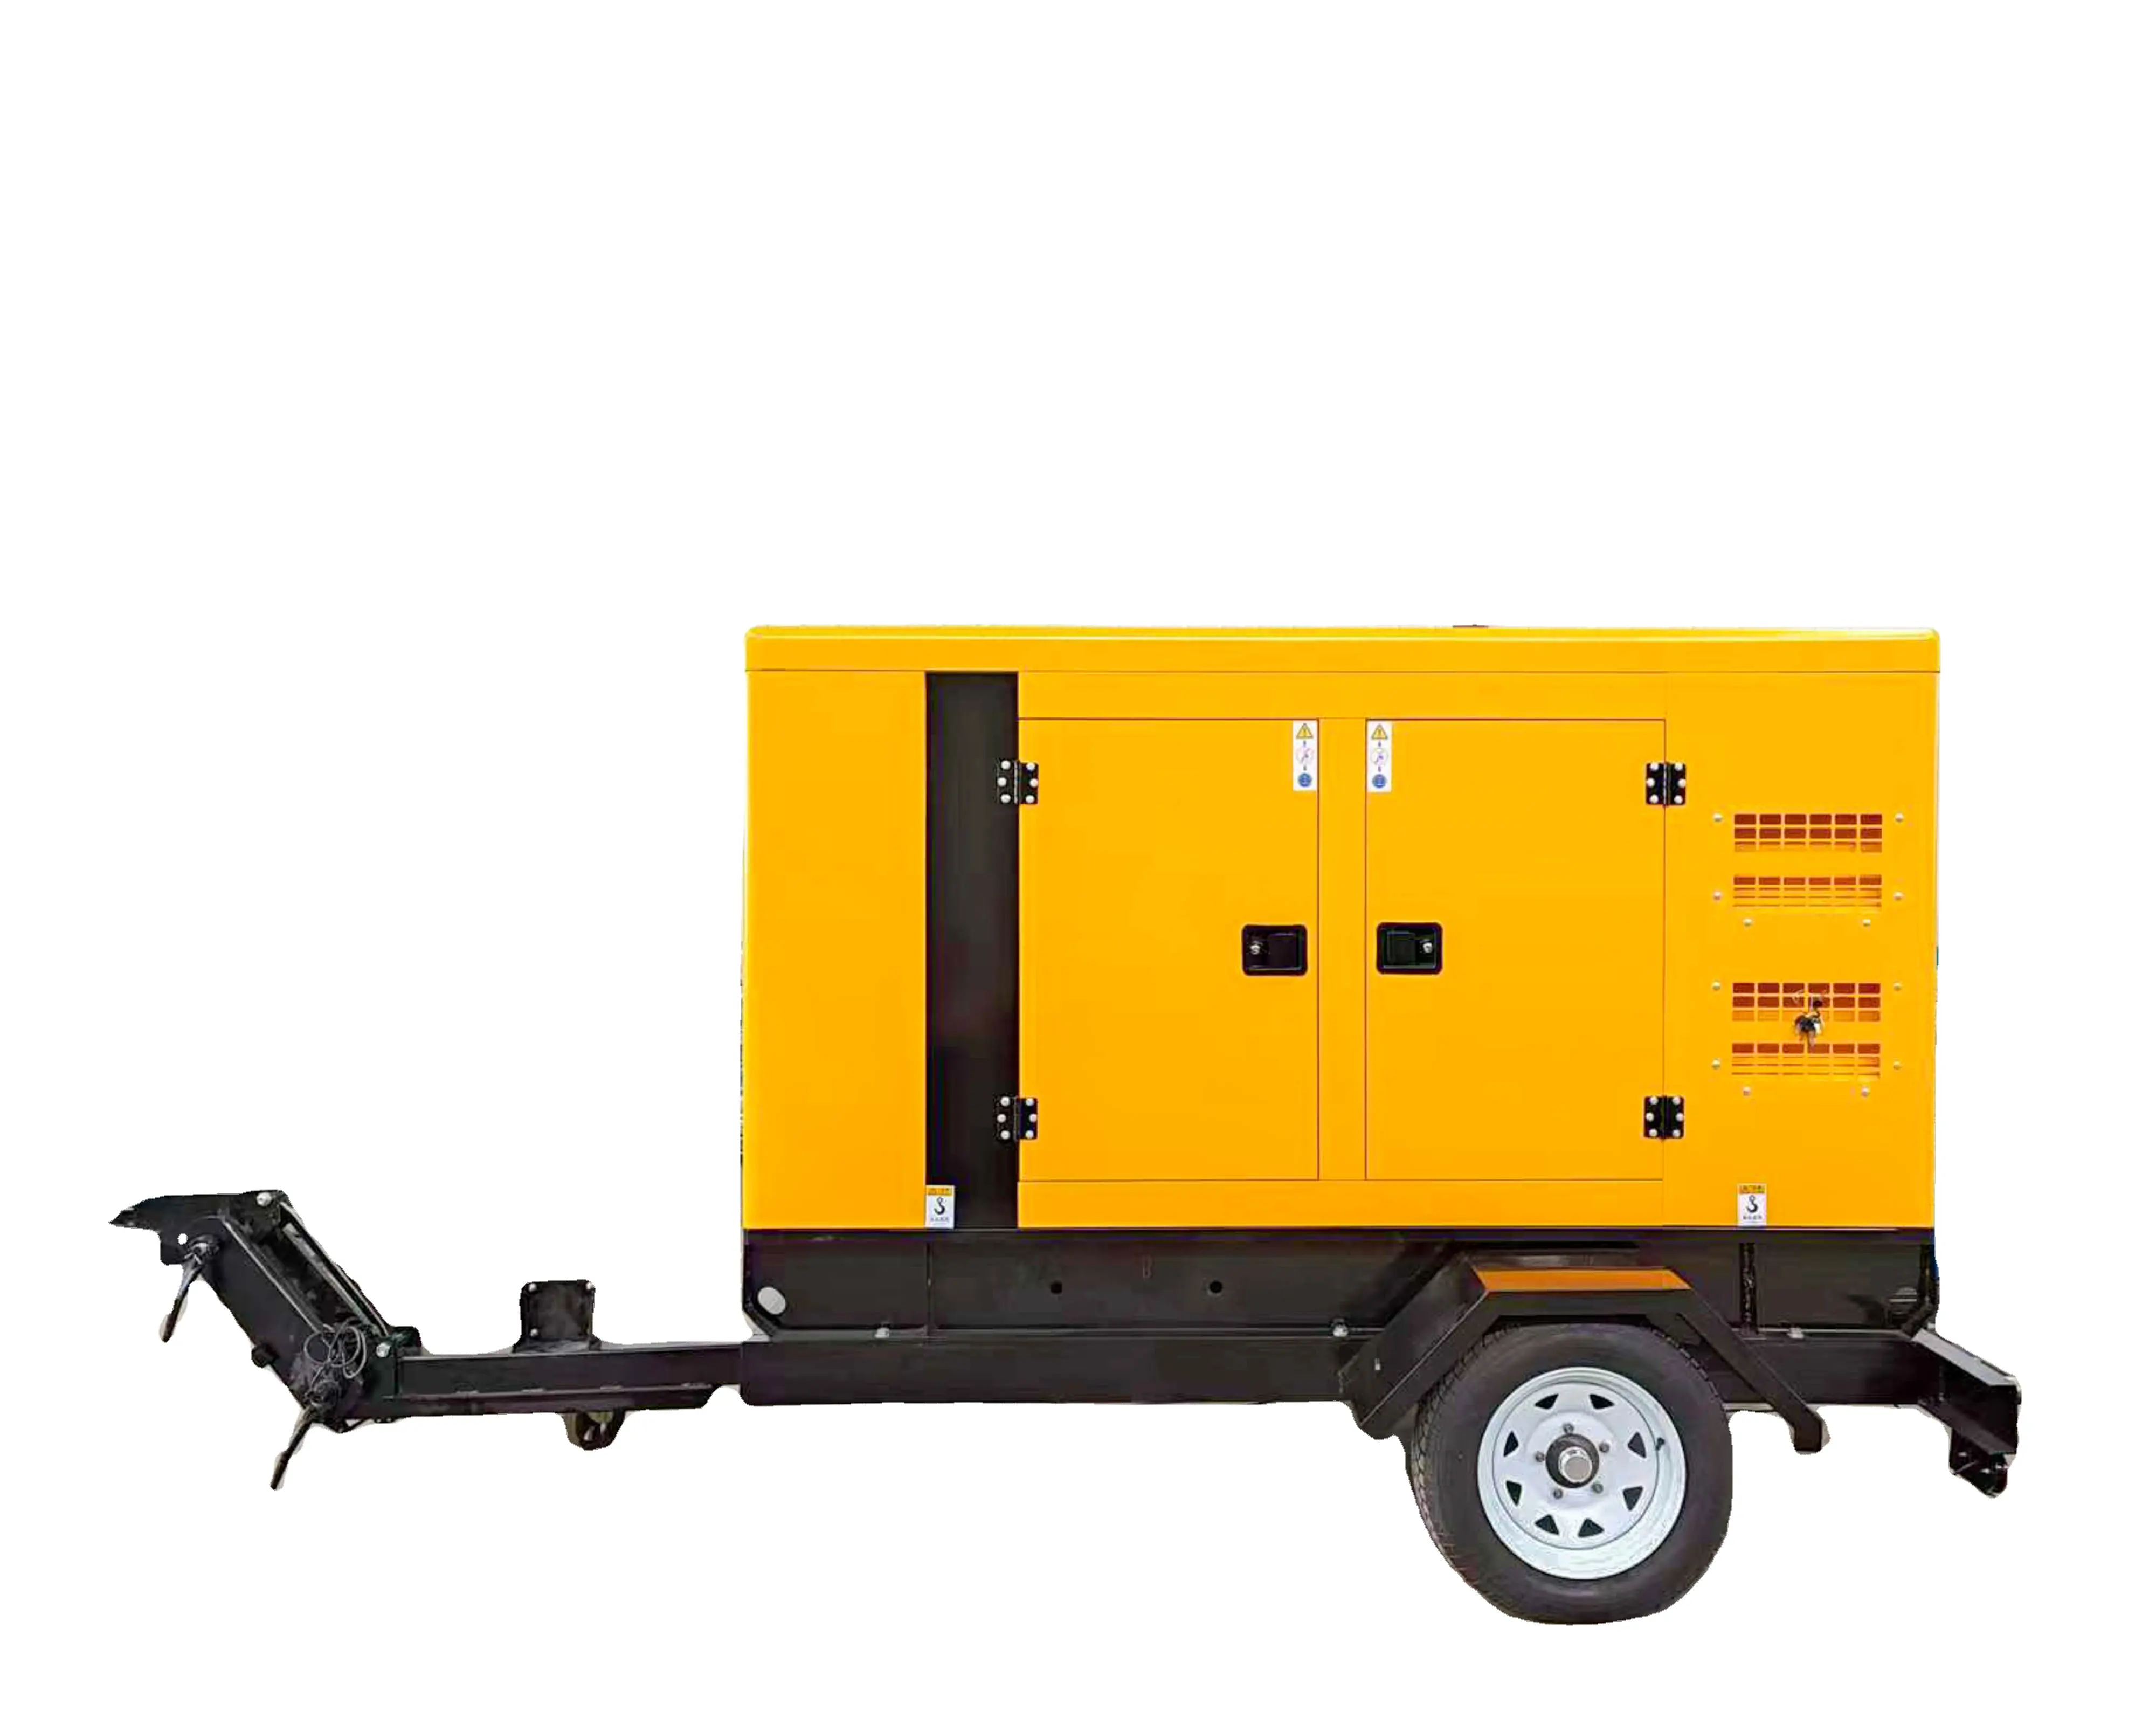 100 500 kva kw generatore diesel set di rimorchi mobili alternatore brushless vendita diretta della fabbrica della cina